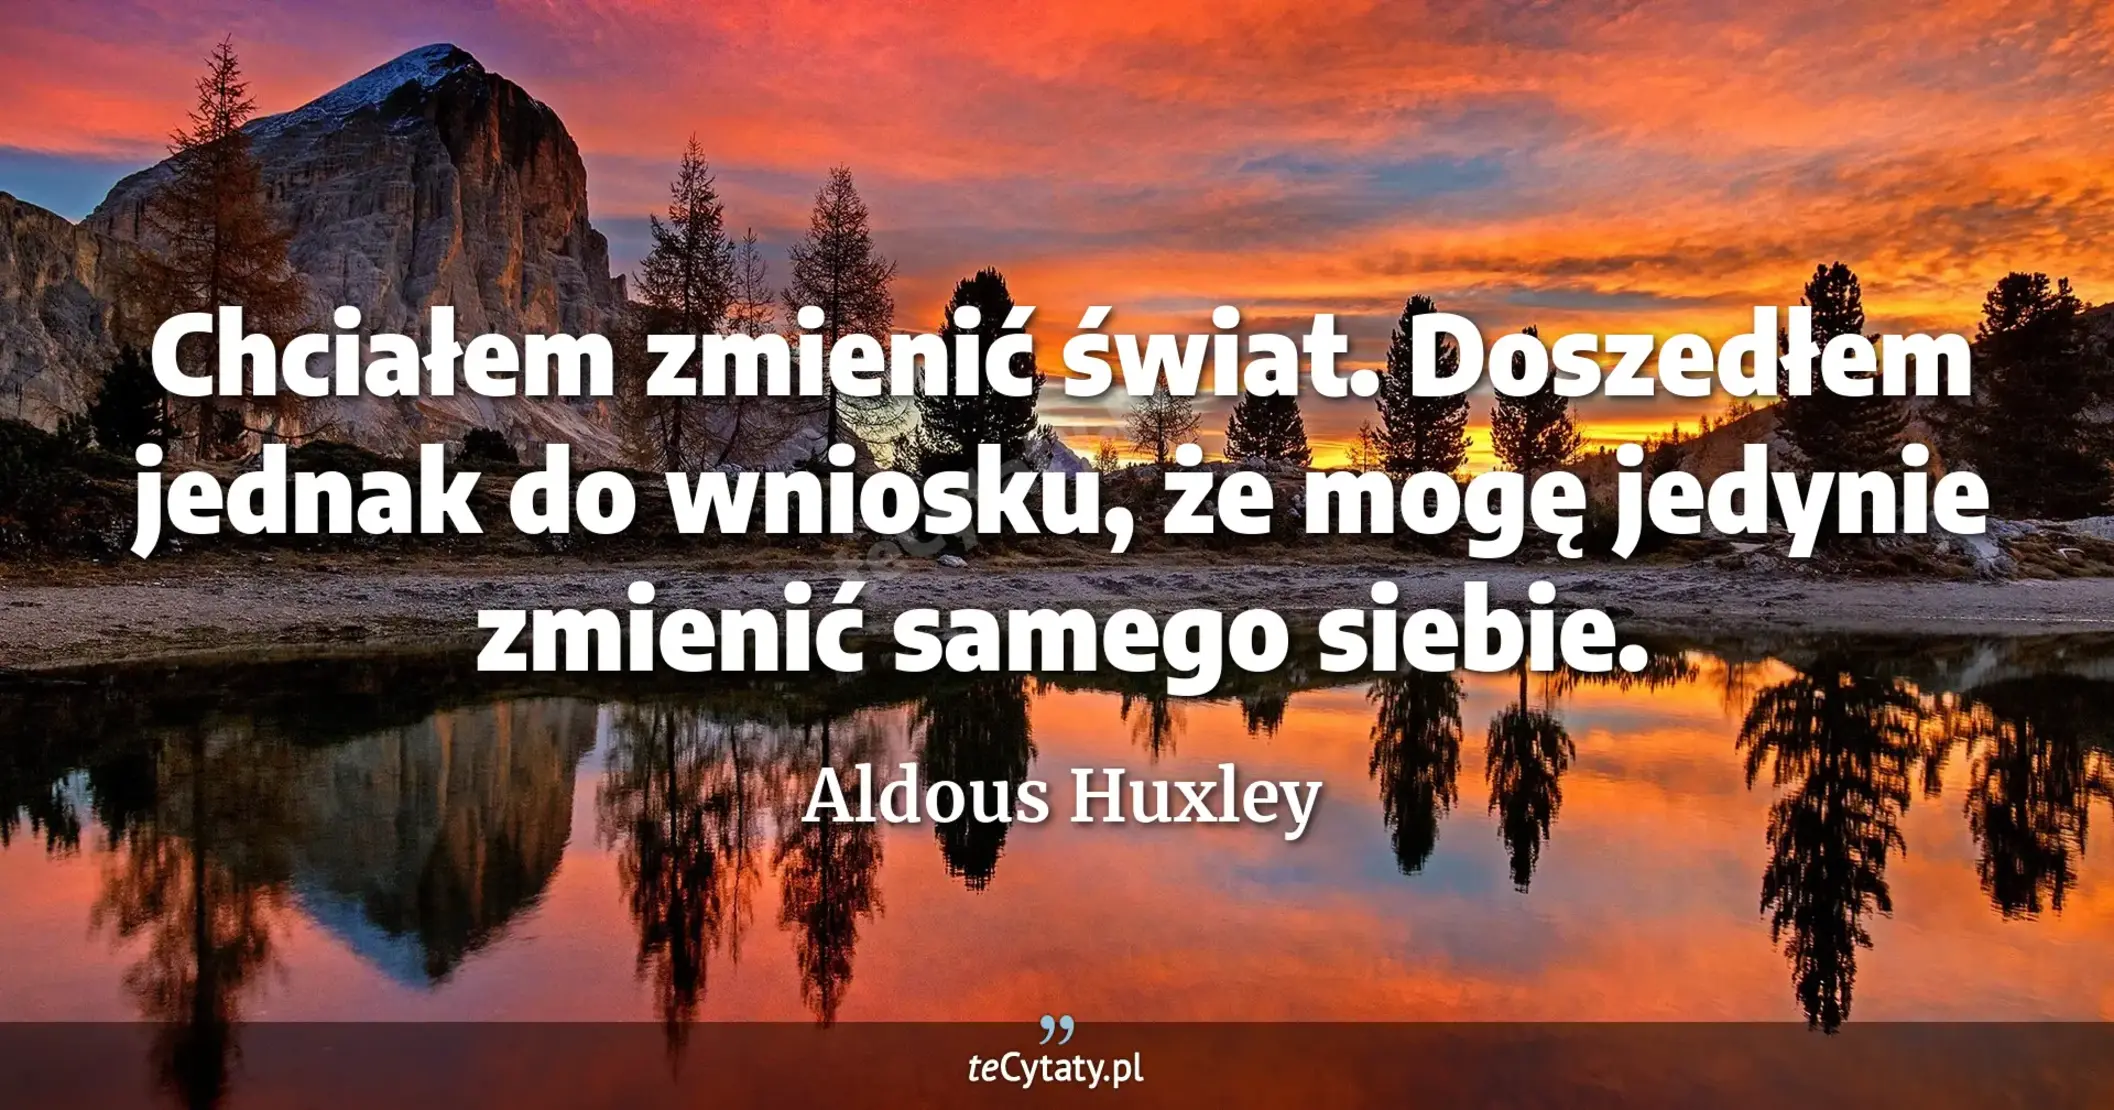 Chciałem zmienić świat. Doszedłem jednak do wniosku, że mogę jedynie zmienić samego siebie. - Aldous Huxley